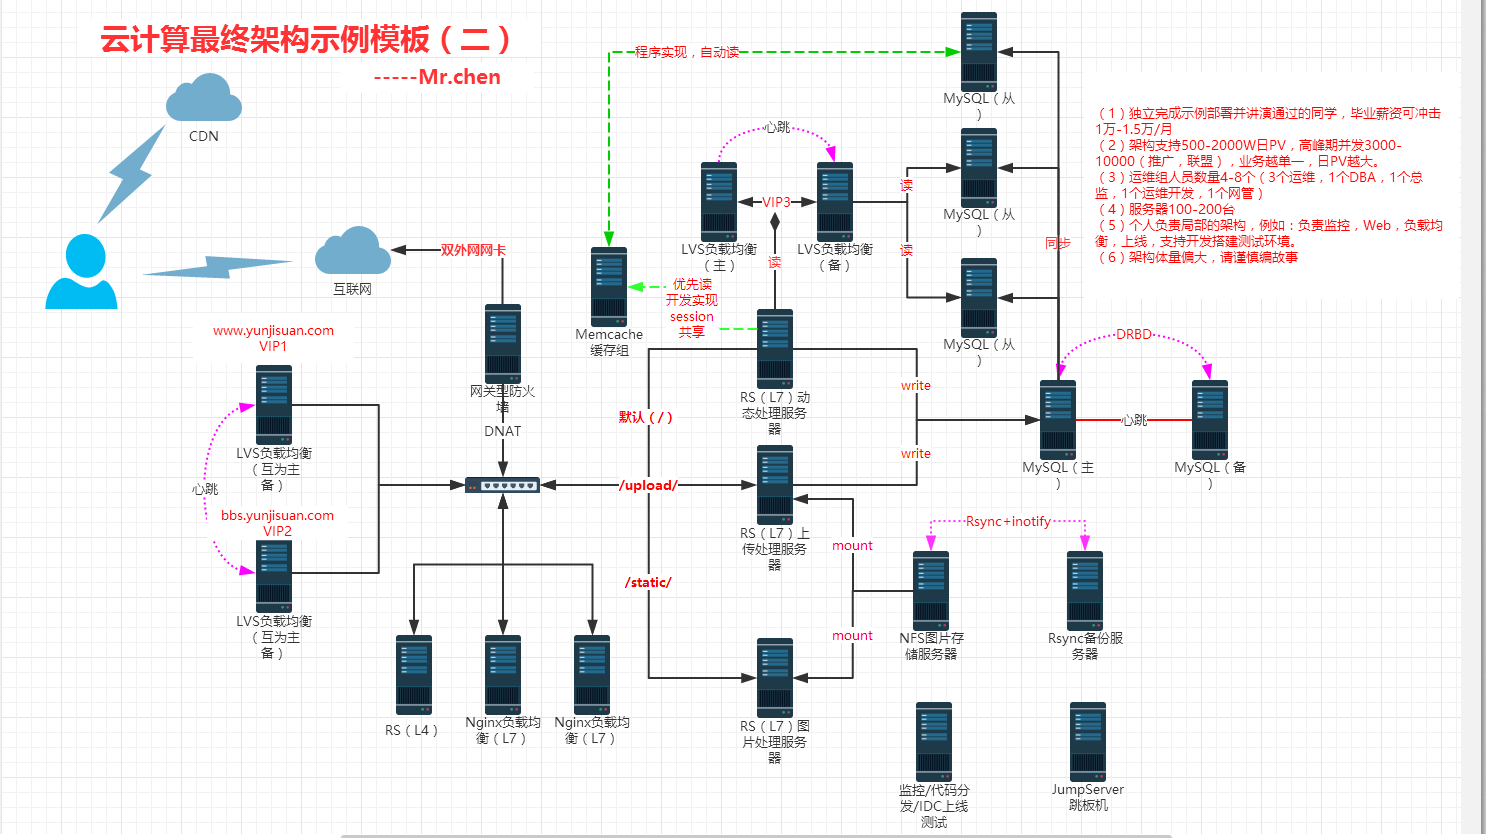 云计算最终架构示例模板（二）.png-136.6kB